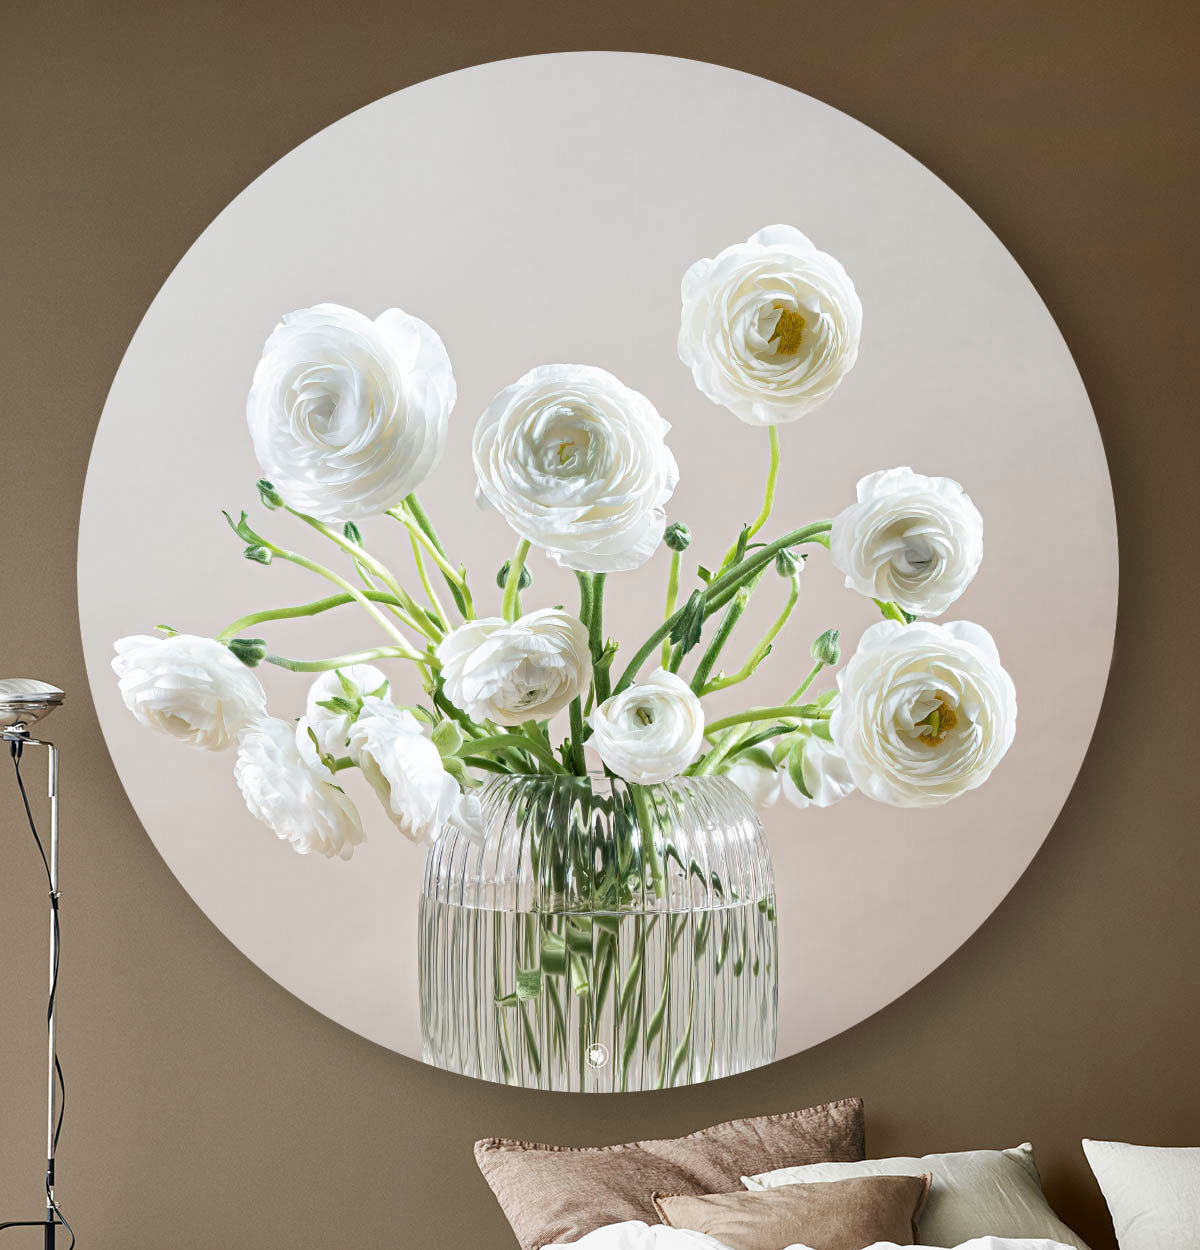 Wandcirkel met een glazen vaas met witte bloemen tegen een donkere muur